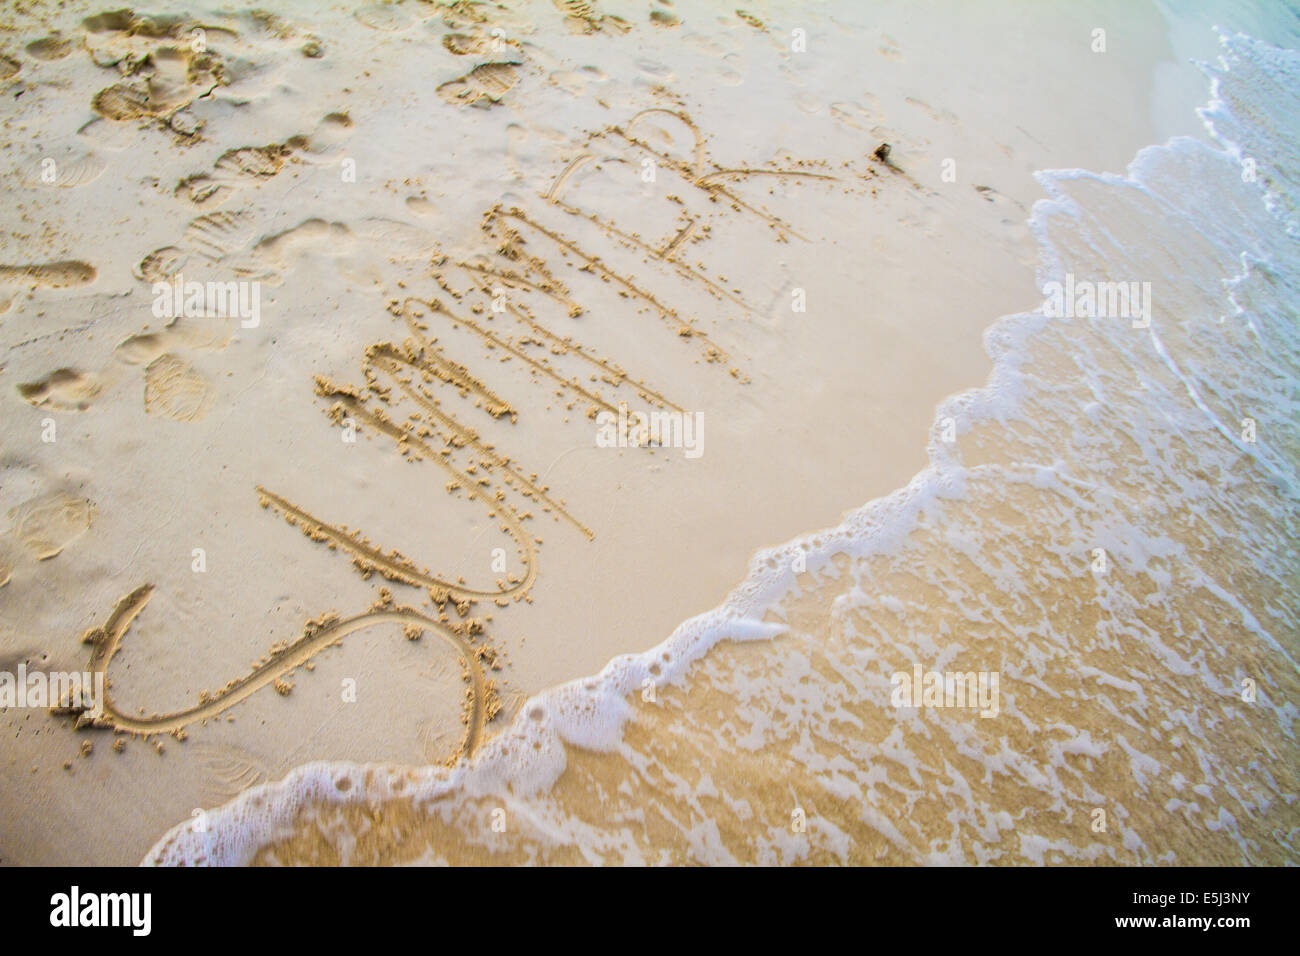 Estate Scritta sulla sabbia in spiaggia in riva al mare Foto Stock